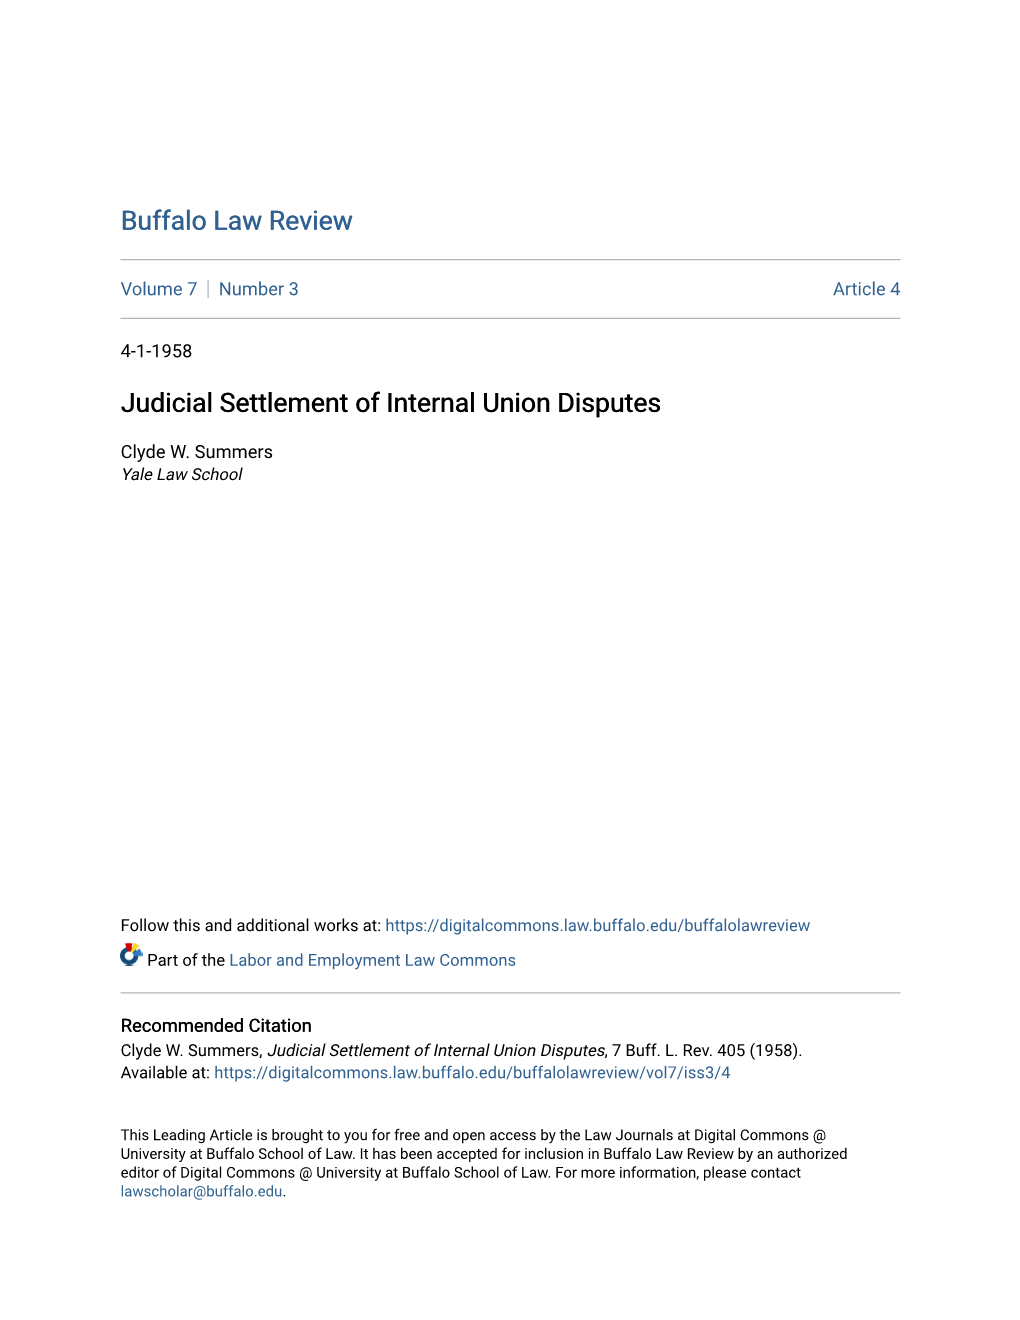 Judicial Settlement of Internal Union Disputes